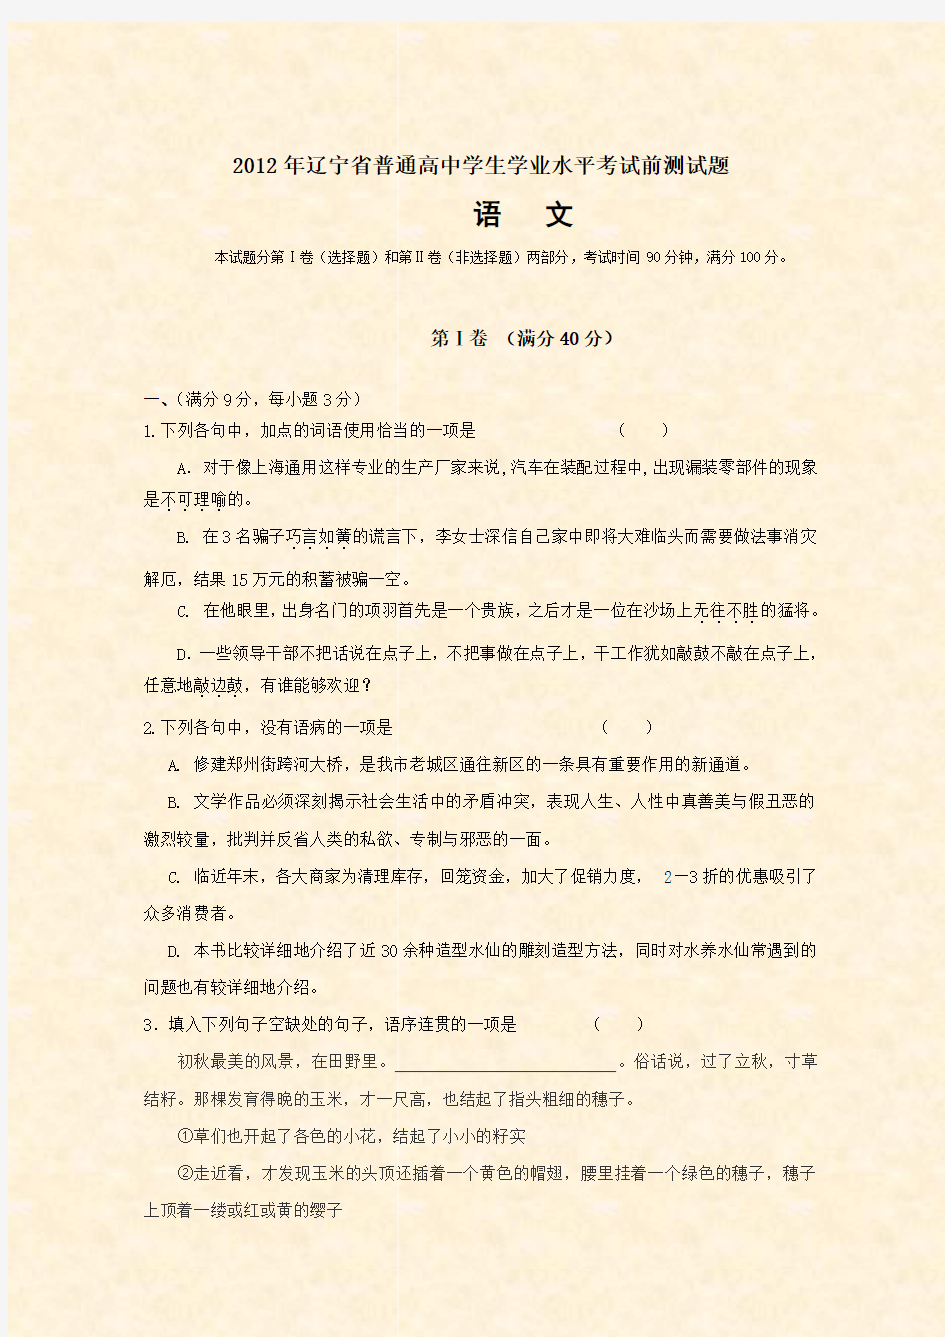 2012年辽宁省普通高中学生学业水平考试前测试题